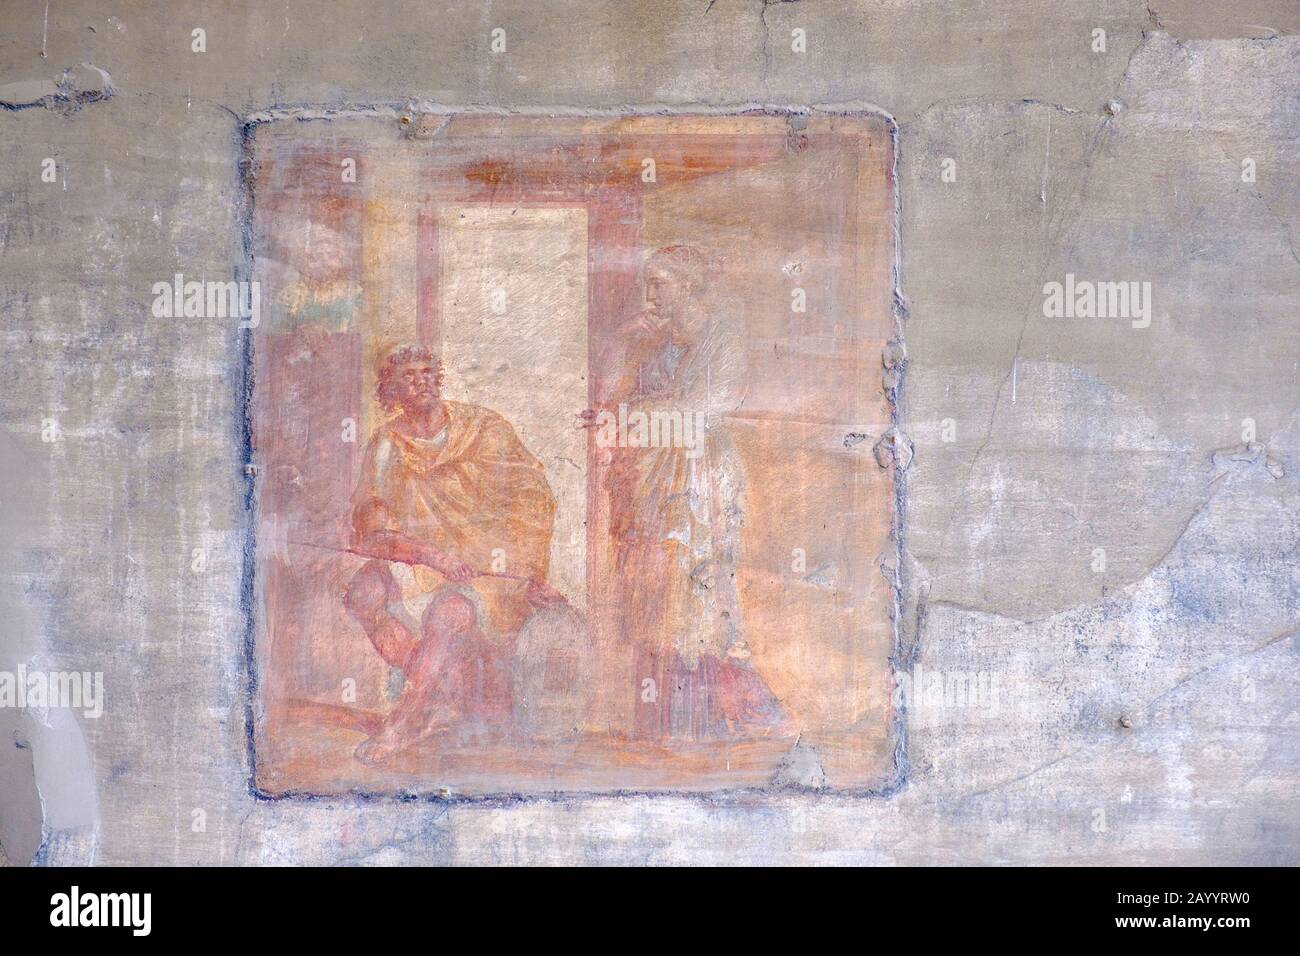 Fresque de Pompéi, fresques romaines de Pompéi Macellum, coin nord-ouest du mur ouest, peinture murale d'Ulysses et de Pénélope, Pompéi, Italie Banque D'Images